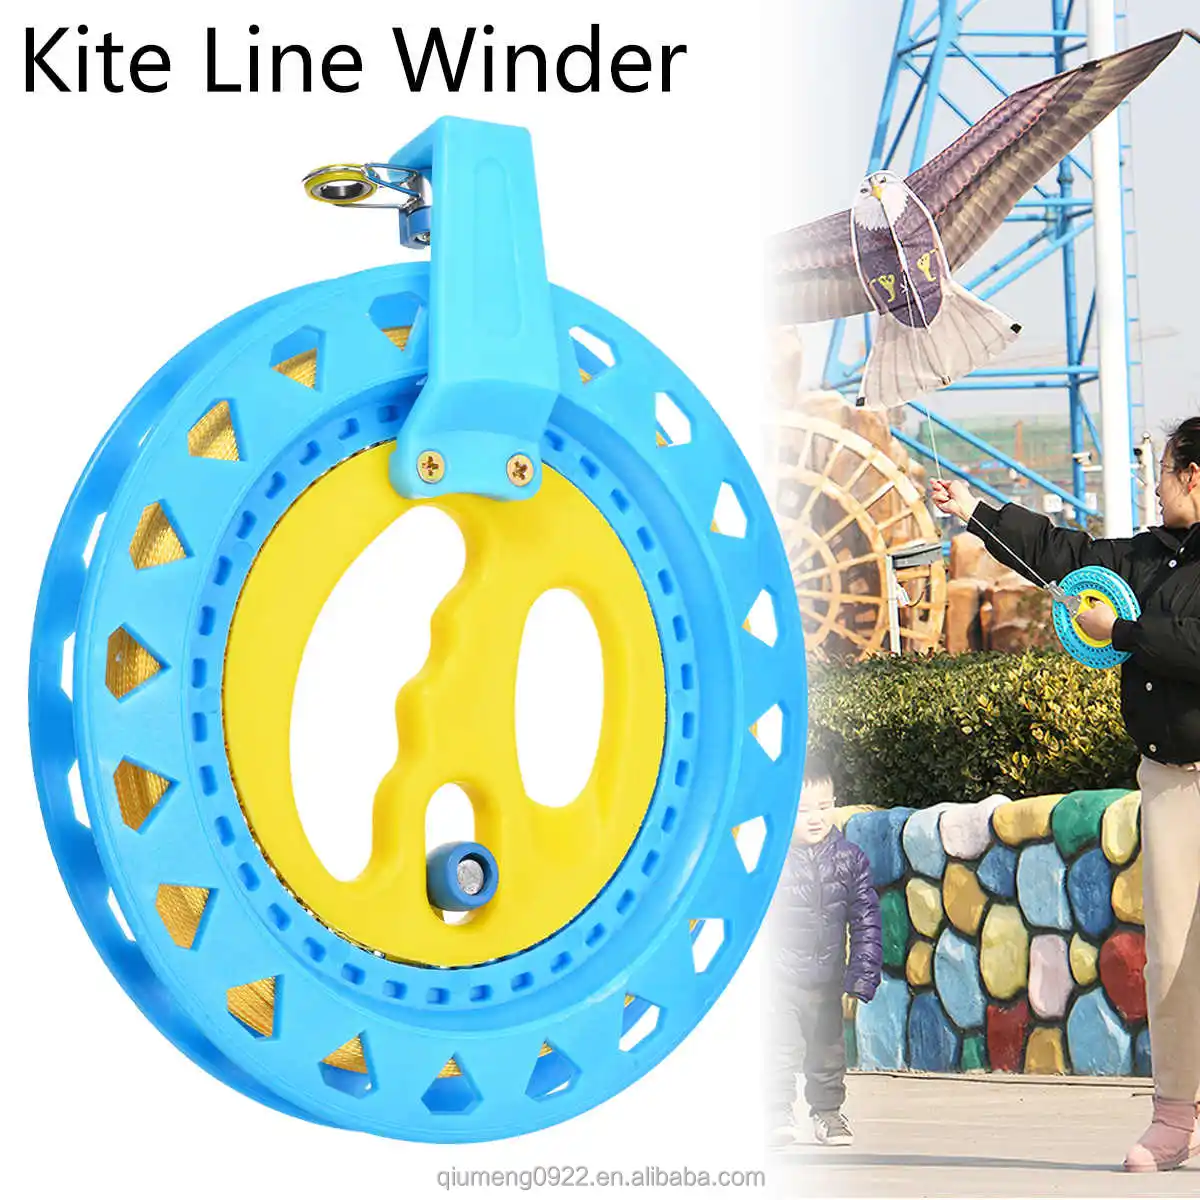 Kite Reel Winder, Kite Line Winder Winding Reel Grip Wheel Handle with